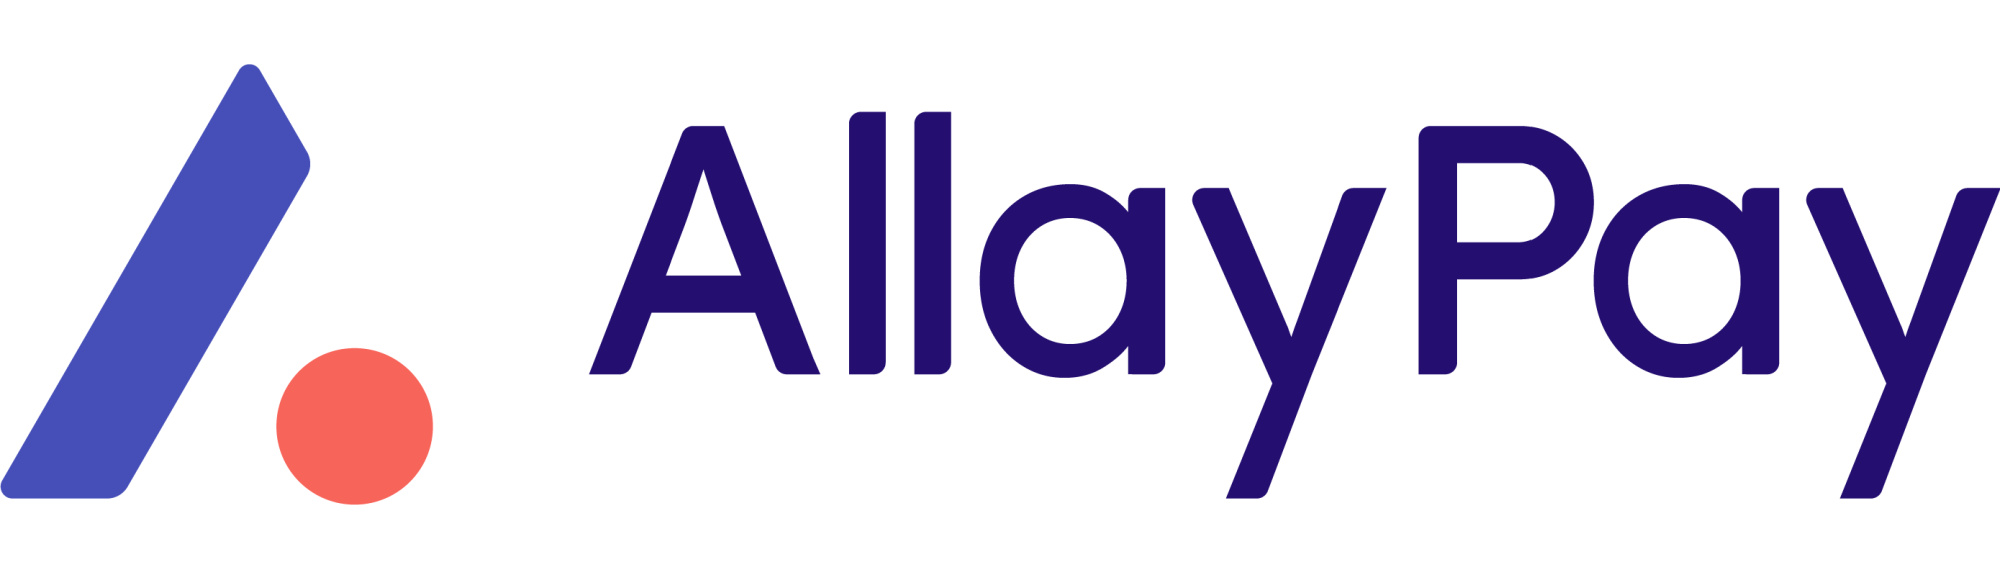 image of allay pay logo